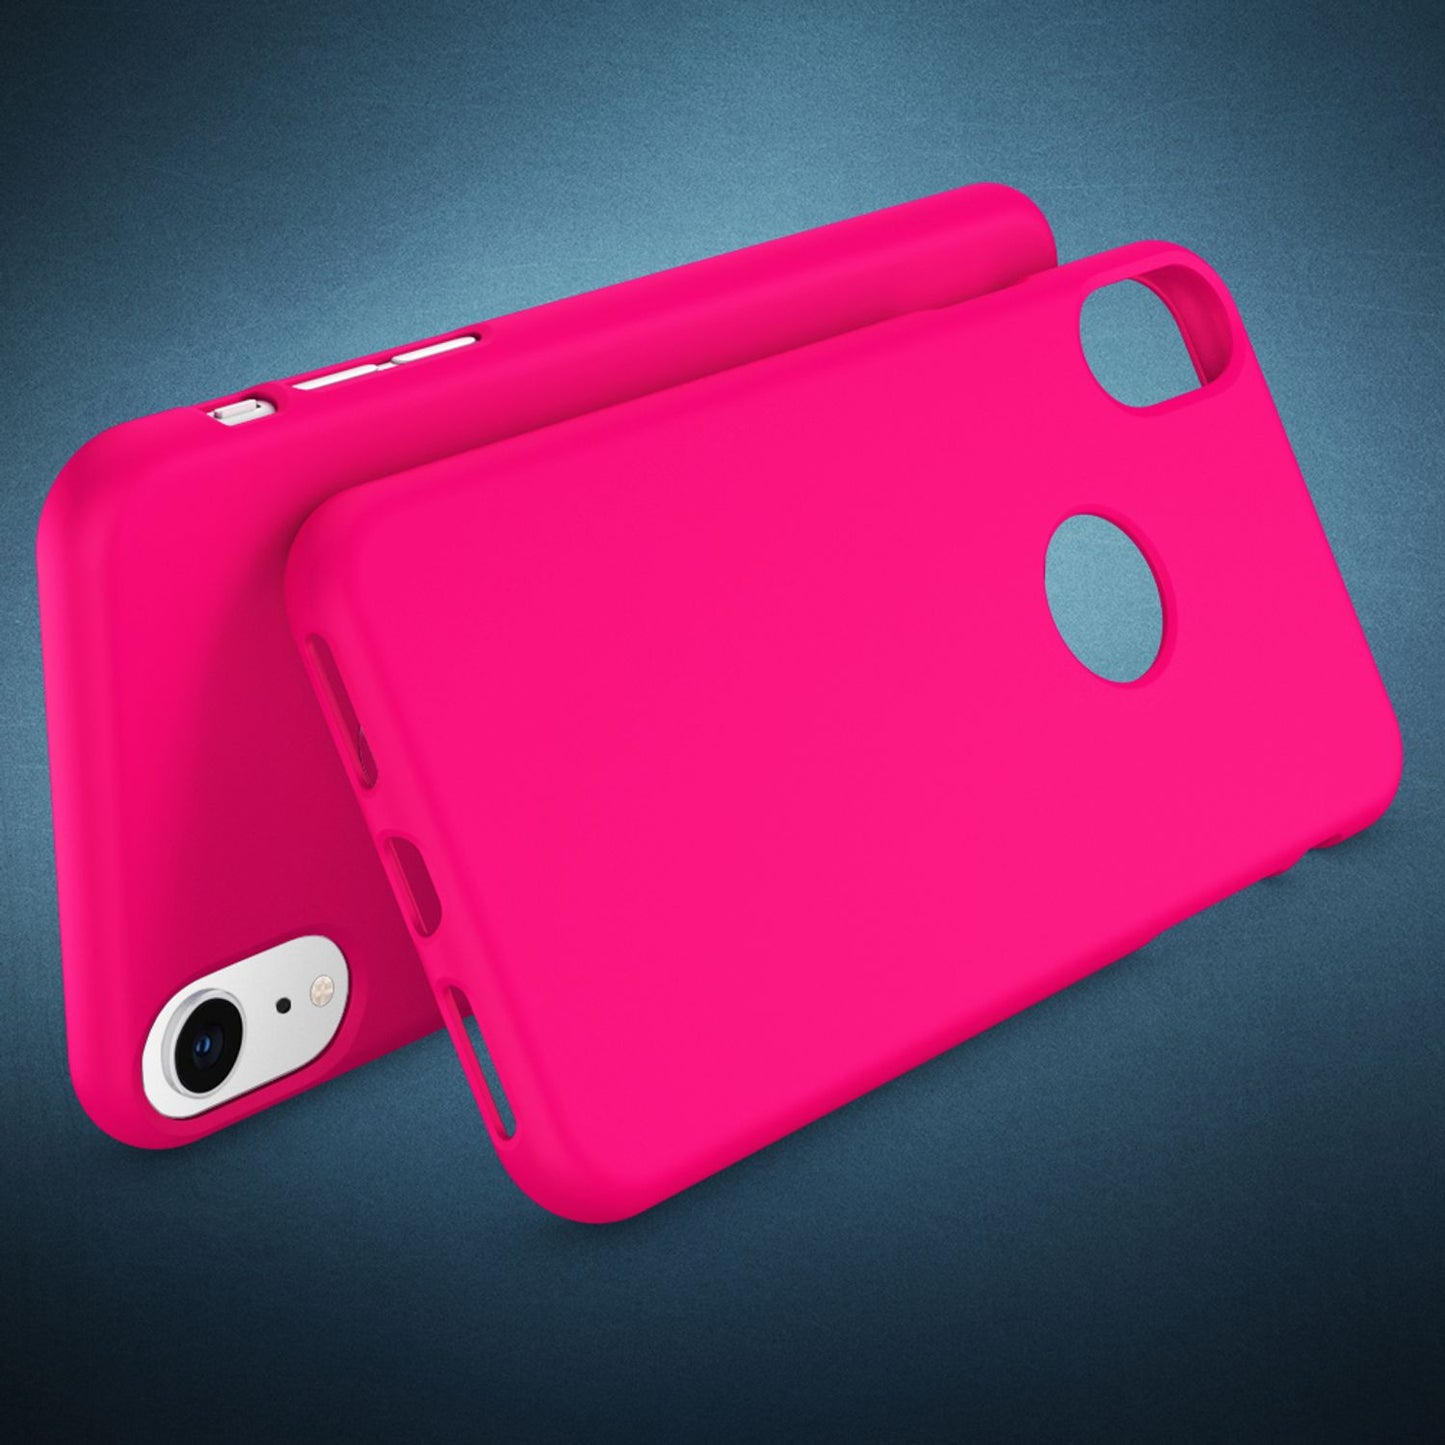 NALIA Handyhülle für Apple iPhone XR, Ultra-Slim Hülle Silikon Neon Case Cover